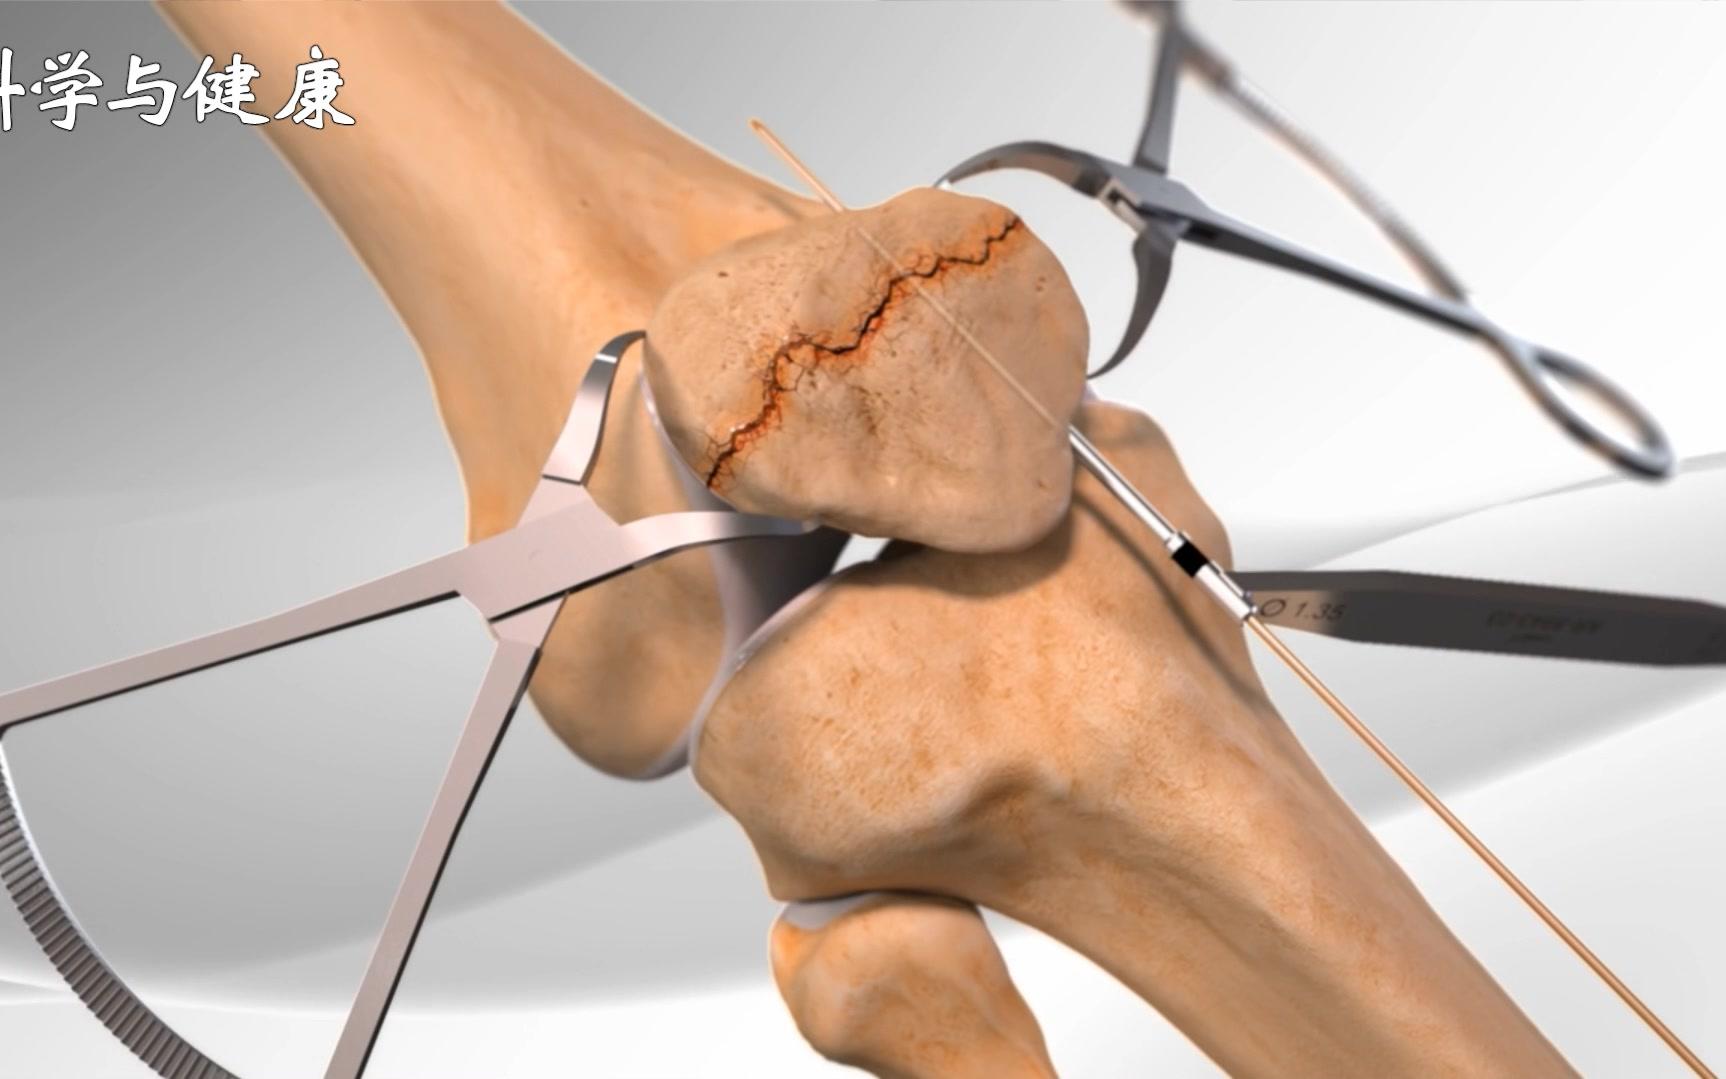 4大膝盖中箭合集3d演示髌骨骨折换半月板髌骨粉碎性骨折全膝关节置换